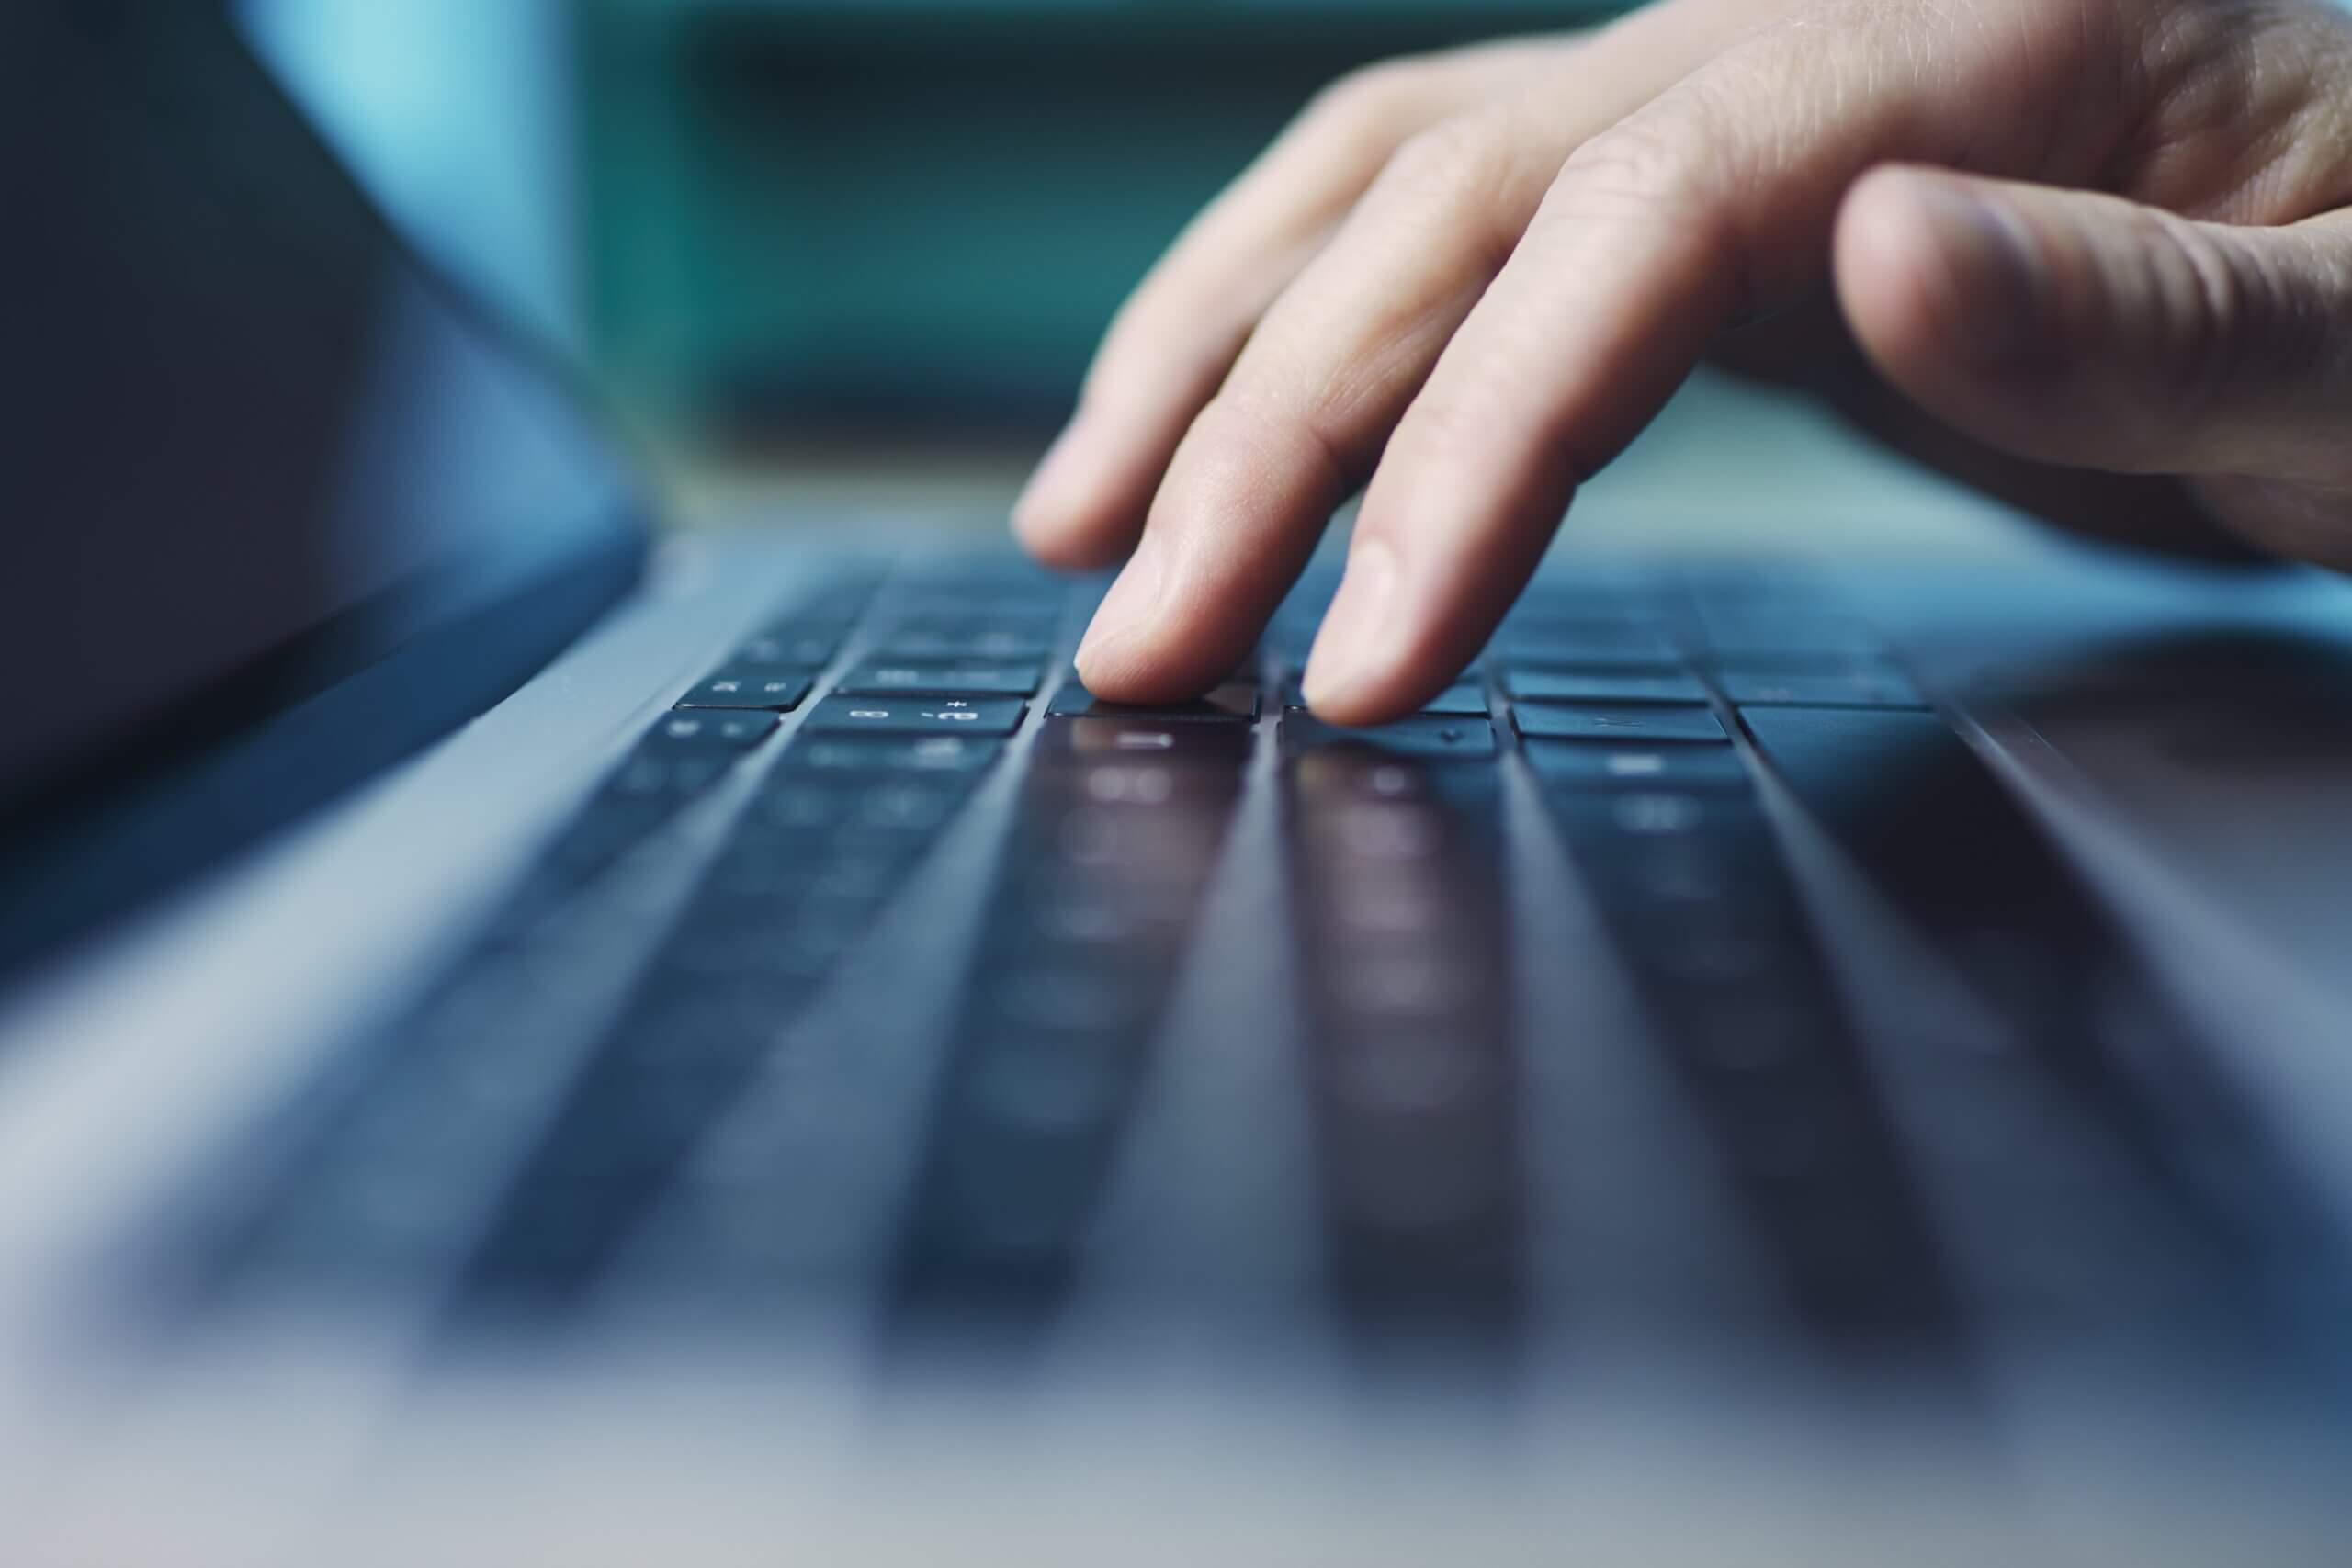 Capa do artigo "Java 8: por que ainda é relevante?", onde conteúdo um notebook em que um mão está em cima do teclado, como se fosse iniciar uma digitação.